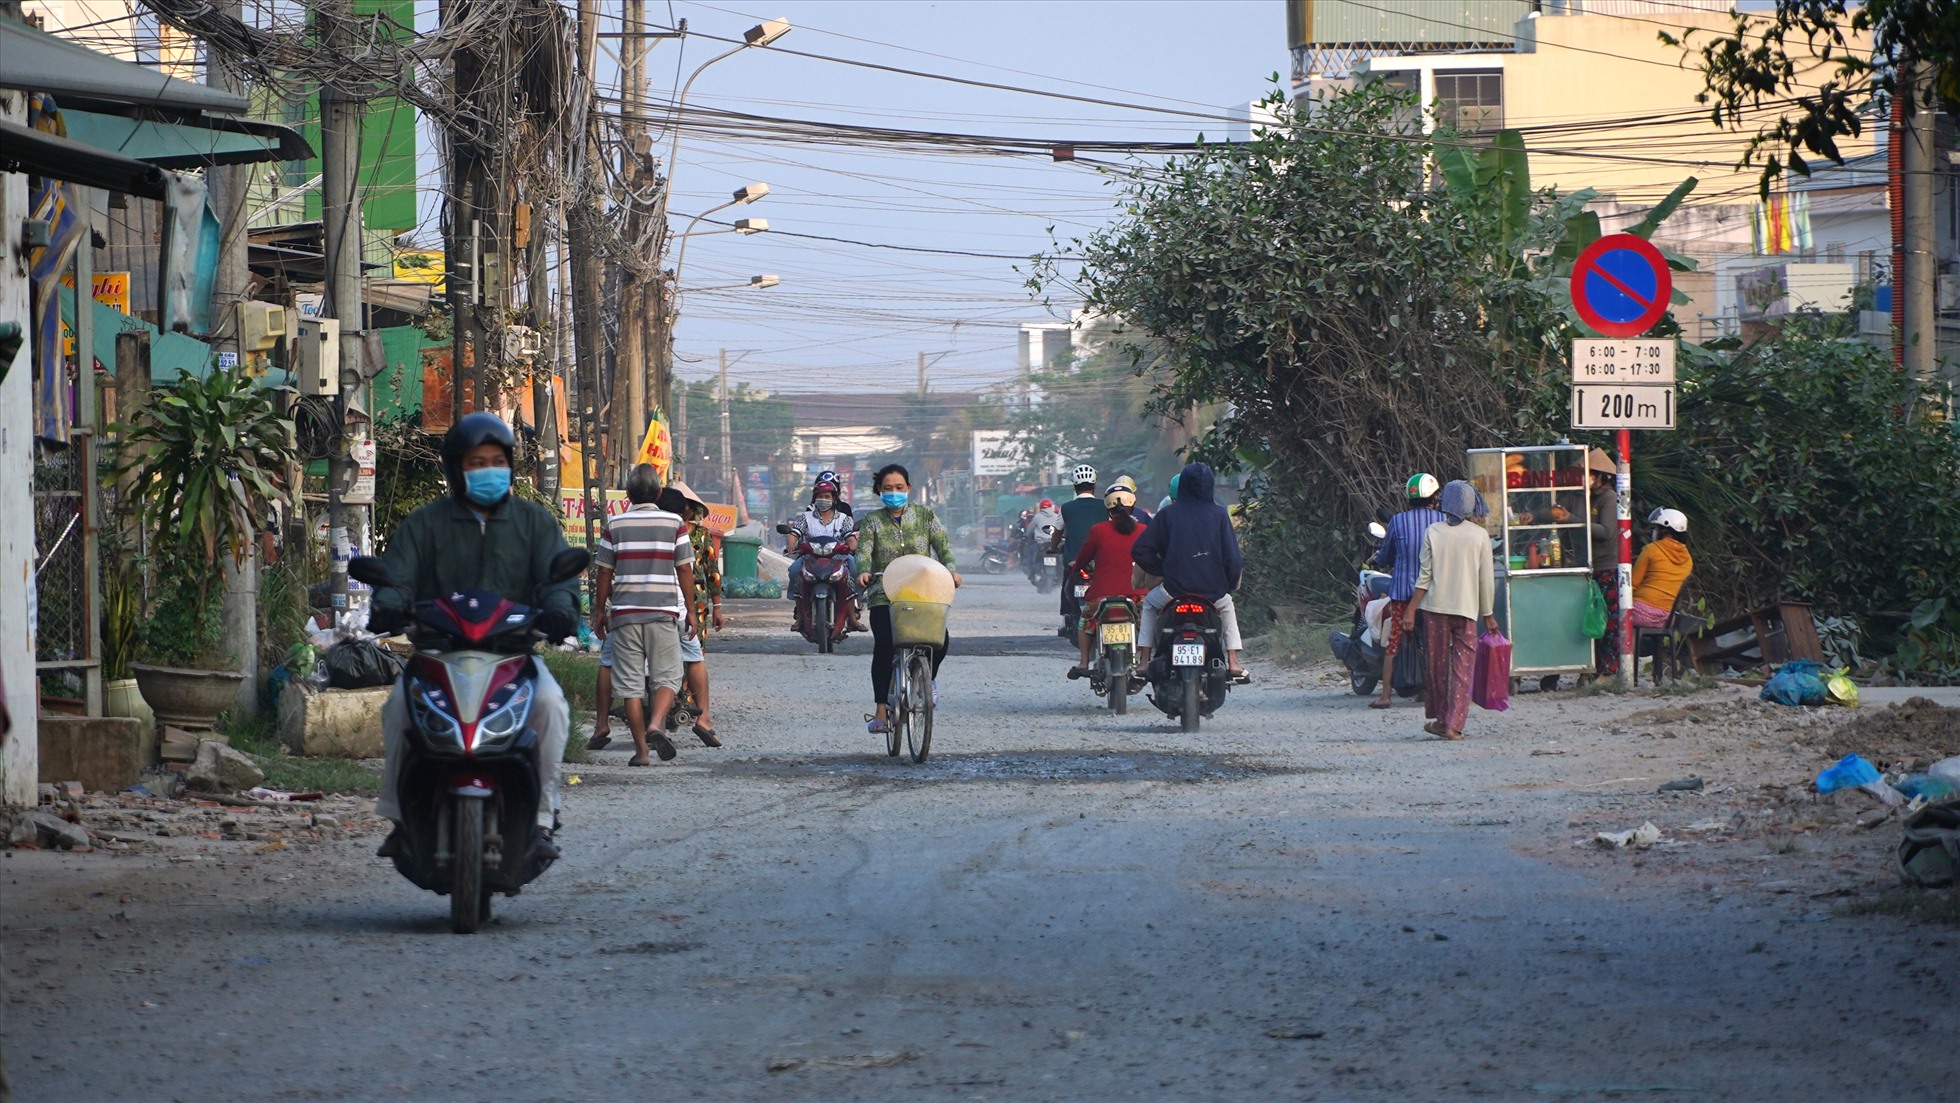 Công trình cải tạo hạ tầng đường Hoàng Quốc Việt thuộc Dự án Phát triển TP. Cần Thơ và tăng cường khả năng thích ứng đô thị, do Ban Quản lý dự án ODA TP. Cần Thơ làm chủ đầu tư, được khởi công xây dựng vào tháng 3.2020, nhưng đến nay vẫn chưa hoàn thành.